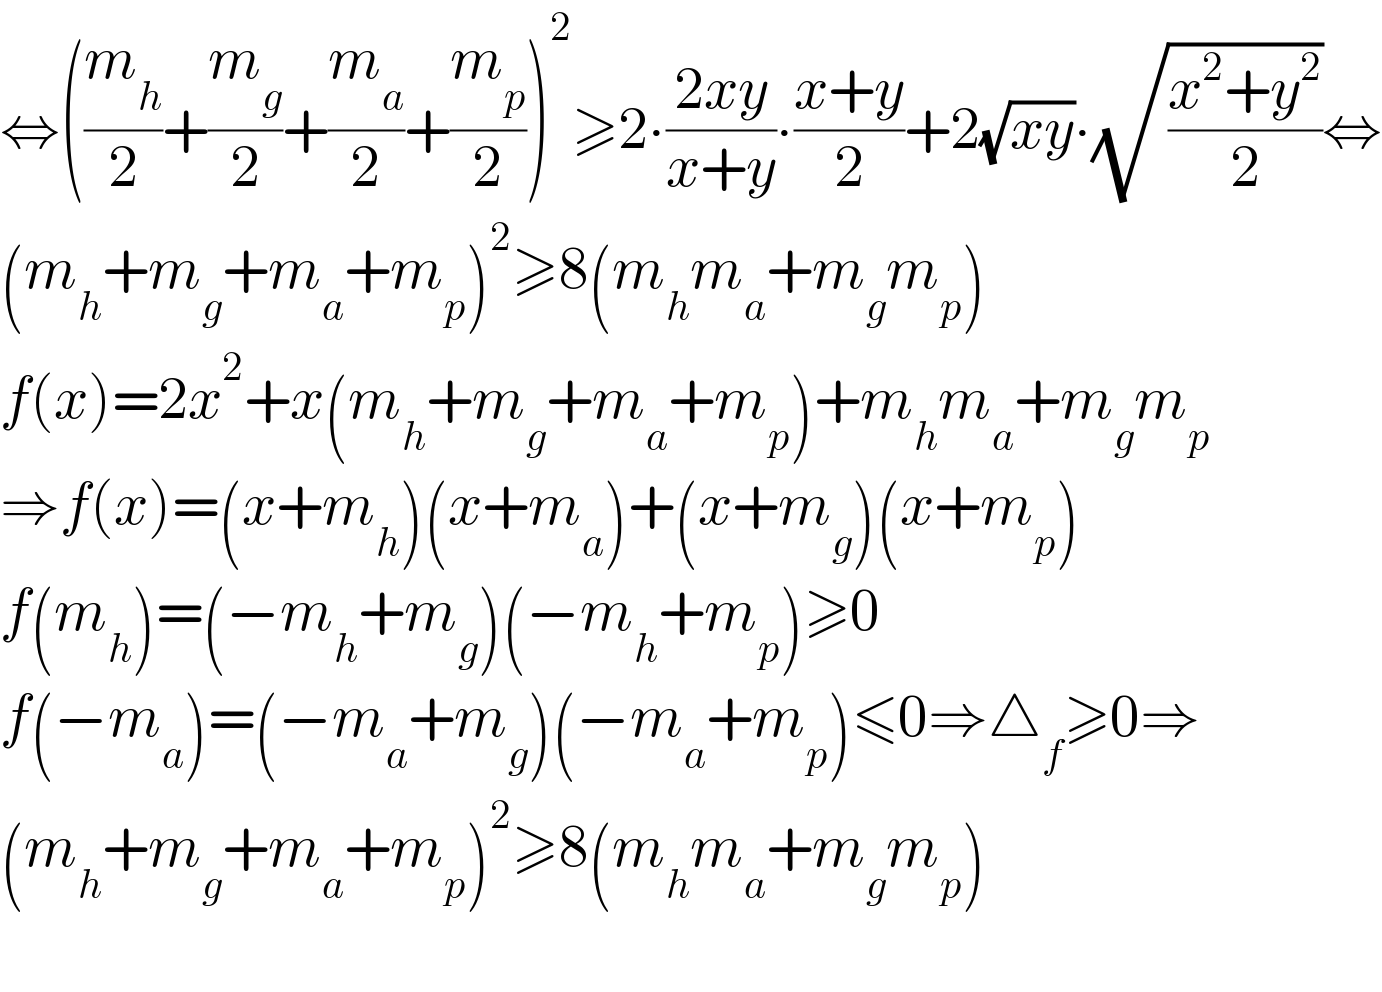 ⇔((m_h /2)+(m_g /2)+(m_a /2)+(m_p /2))^2 ≥2∙((2xy)/(x+y))∙((x+y)/2)+2(√(xy))∙(√((x^2 +y^2 )/2))⇔  (m_h +m_g +m_a +m_p )^2 ≥8(m_h m_a +m_g m_p )  f(x)=2x^2 +x(m_h +m_g +m_a +m_p )+m_h m_a +m_g m_p   ⇒f(x)=(x+m_h )(x+m_a )+(x+m_g )(x+m_p )  f(m_h )=(−m_h +m_g )(−m_h +m_p )≥0  f(−m_a )=(−m_a +m_g )(−m_a +m_p )≤0⇒△_f ≥0⇒  (m_h +m_g +m_a +m_p )^2 ≥8(m_h m_a +m_g m_p )    